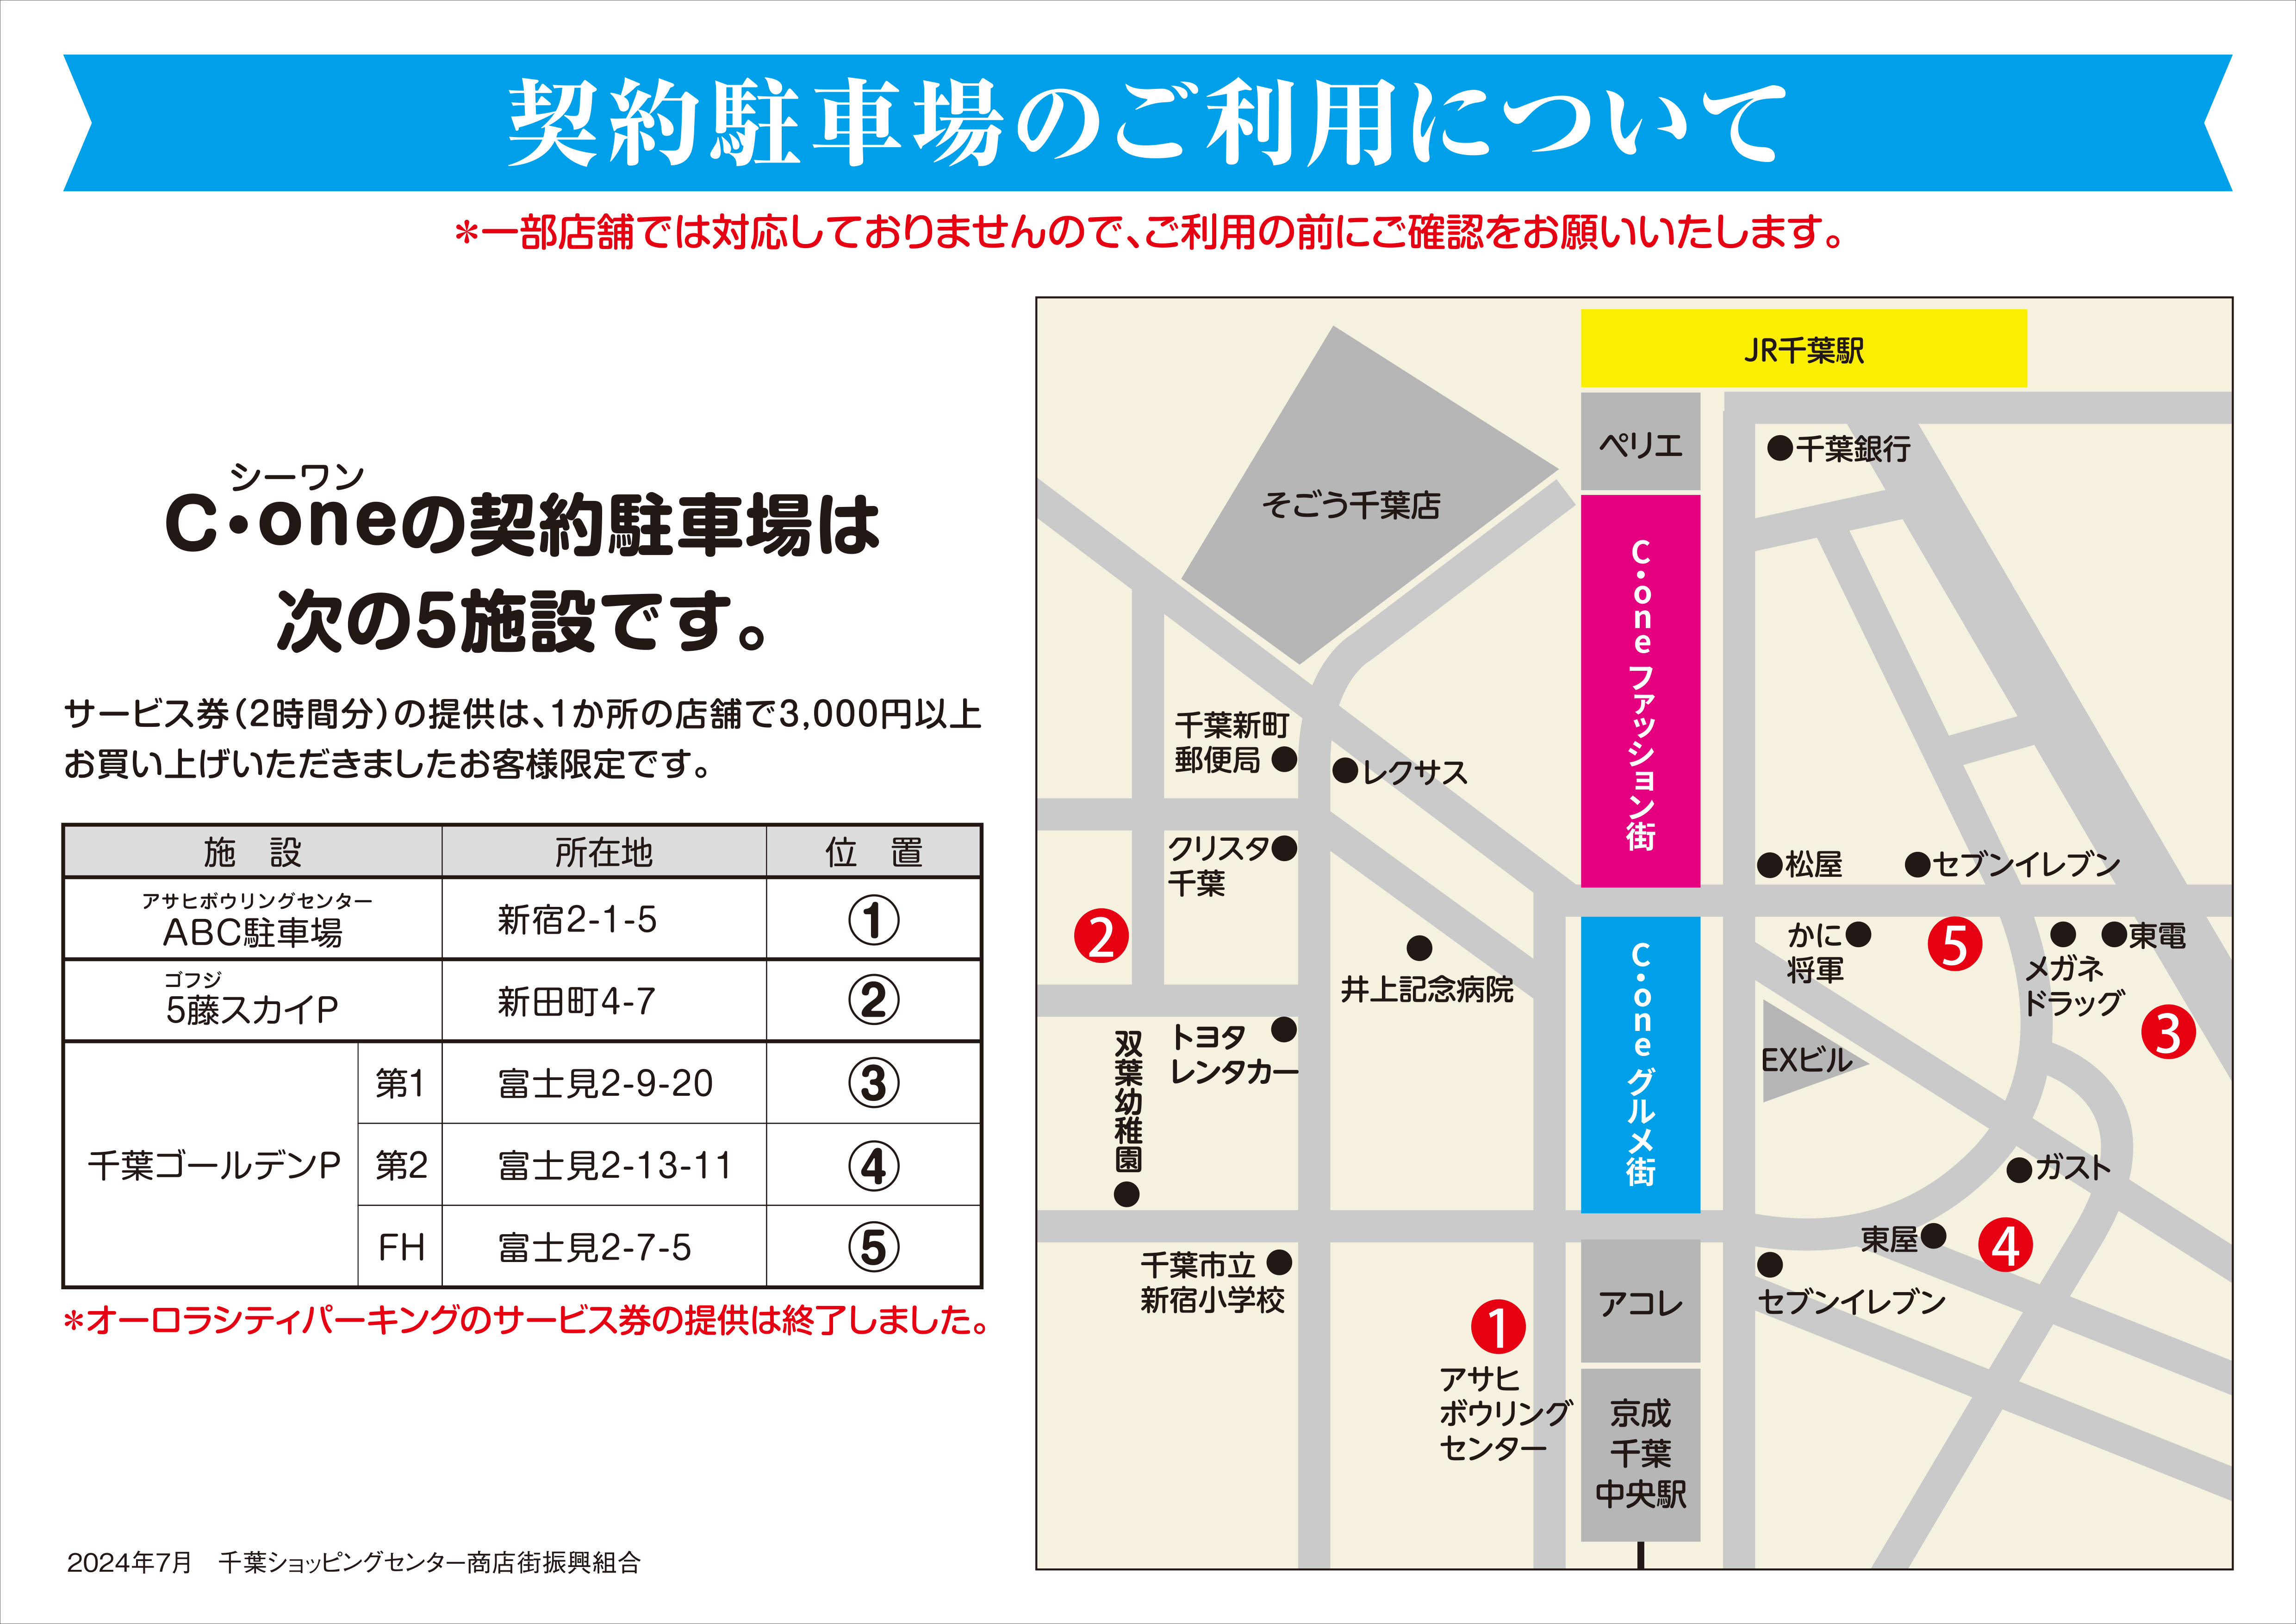 Cone_Parking-lot-guide-map_Yoko